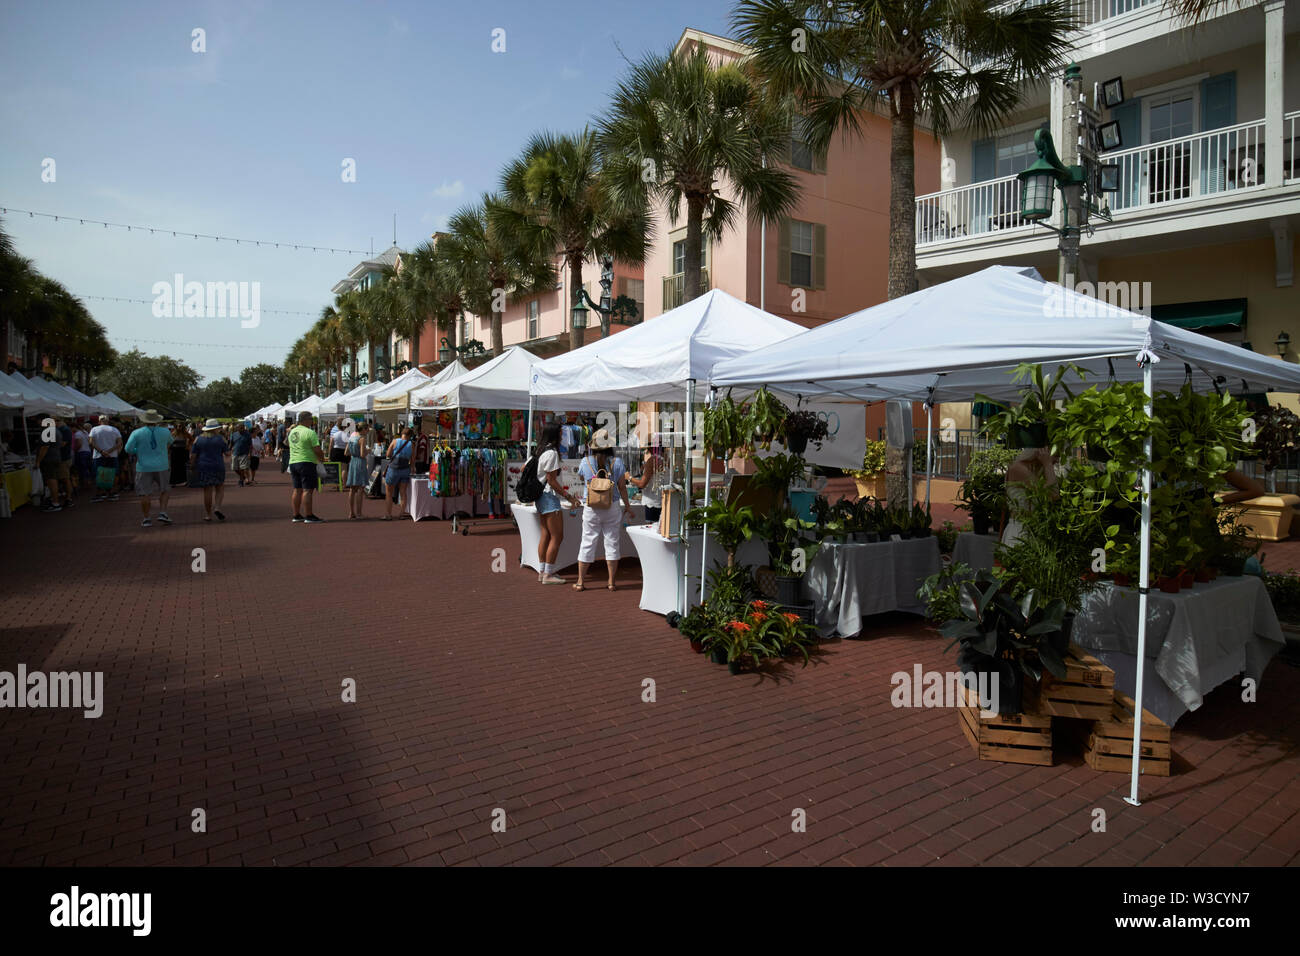 sunday farmers market on market street celebration florida united states of america Stock Photo